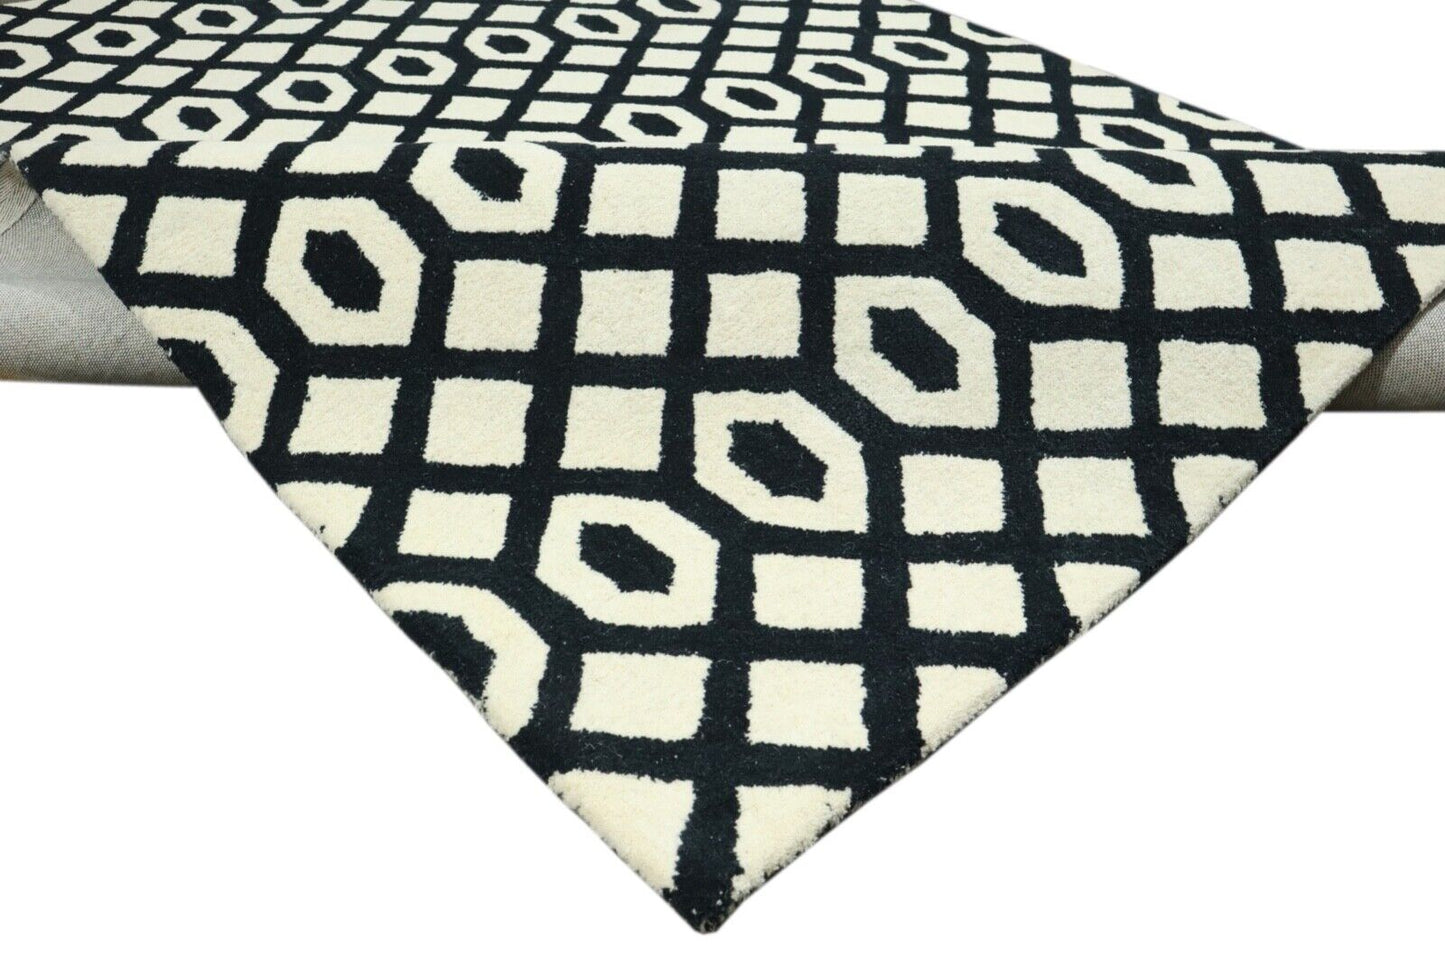 Beige Schwarz Teppich 100% Wolle 160X230 cm Handarbeit Handgetuftet T930